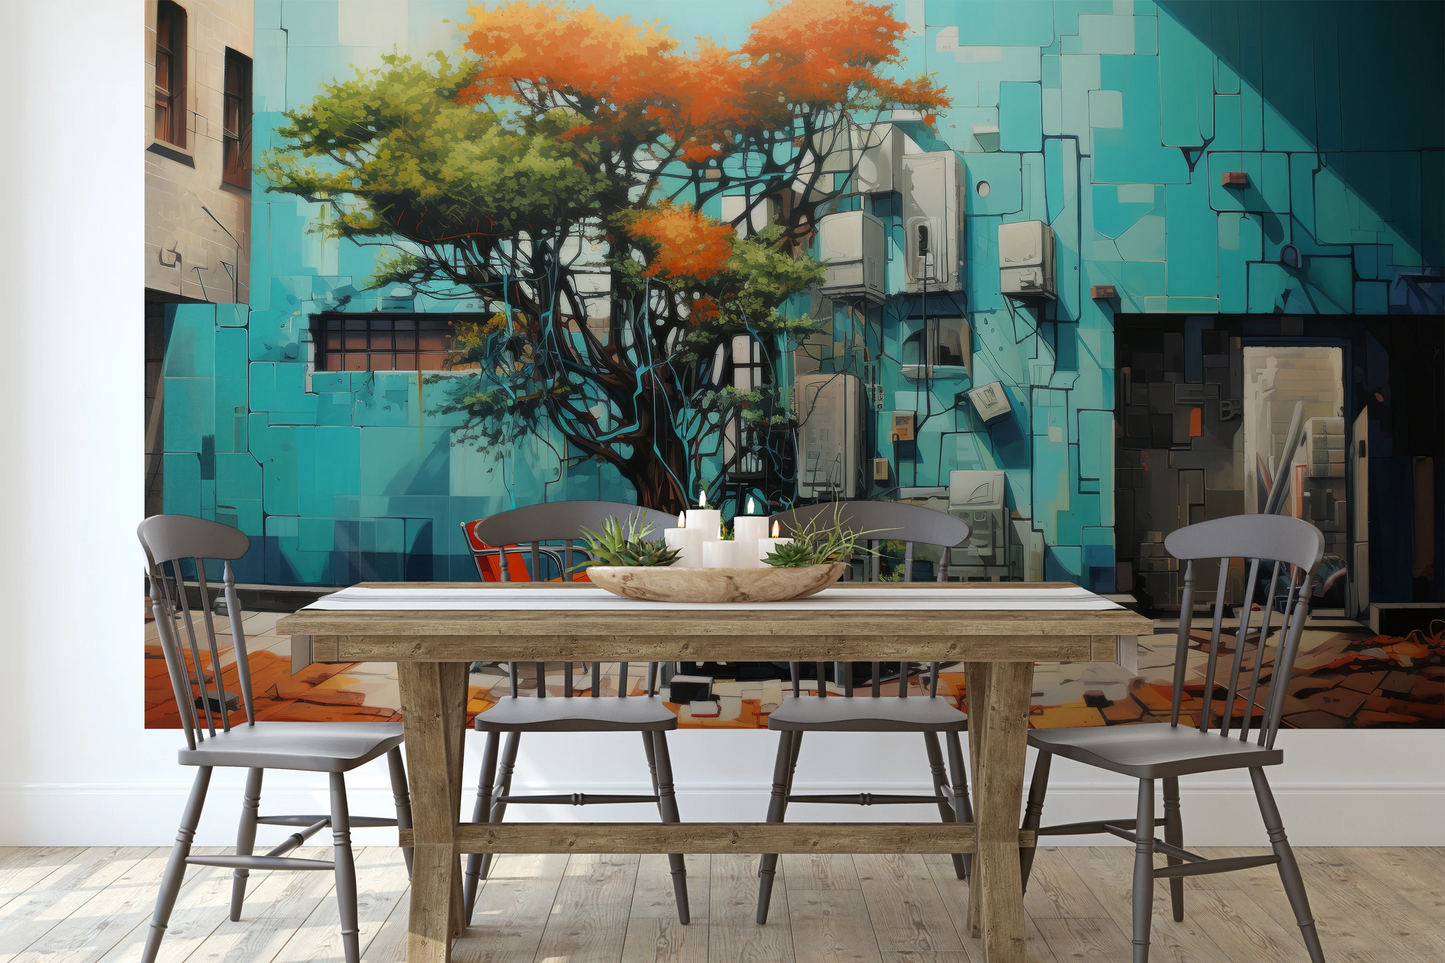 Fototapeta malowana o nazwie Concrete Oasis pokazana w aranżacji wnętrza.